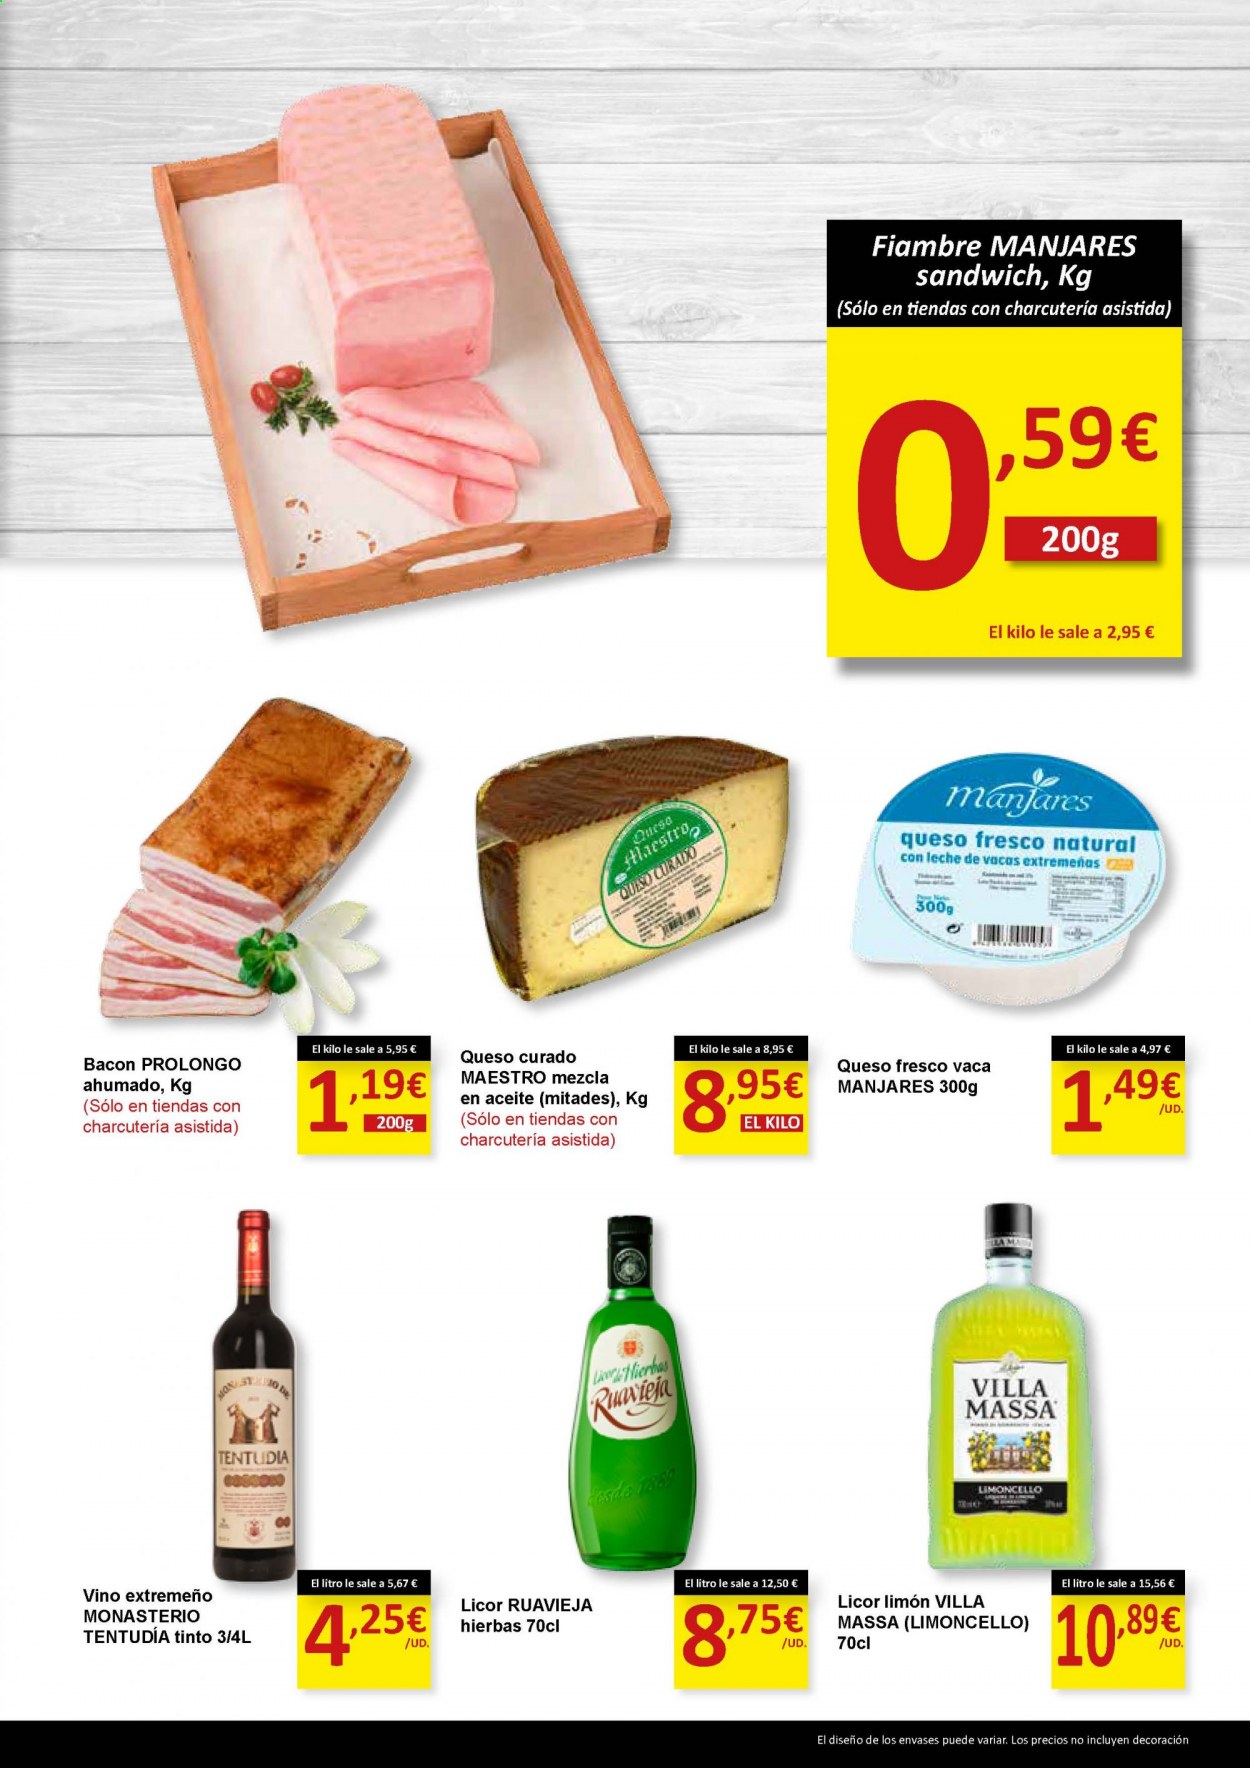 thumbnail - Folleto actual SPAR - 15/01/21 - 31/01/21 - Ventas - sandwich, bacón, fiambre, queso curado, queso fresco, vino, licor, limoncello. Página 11.